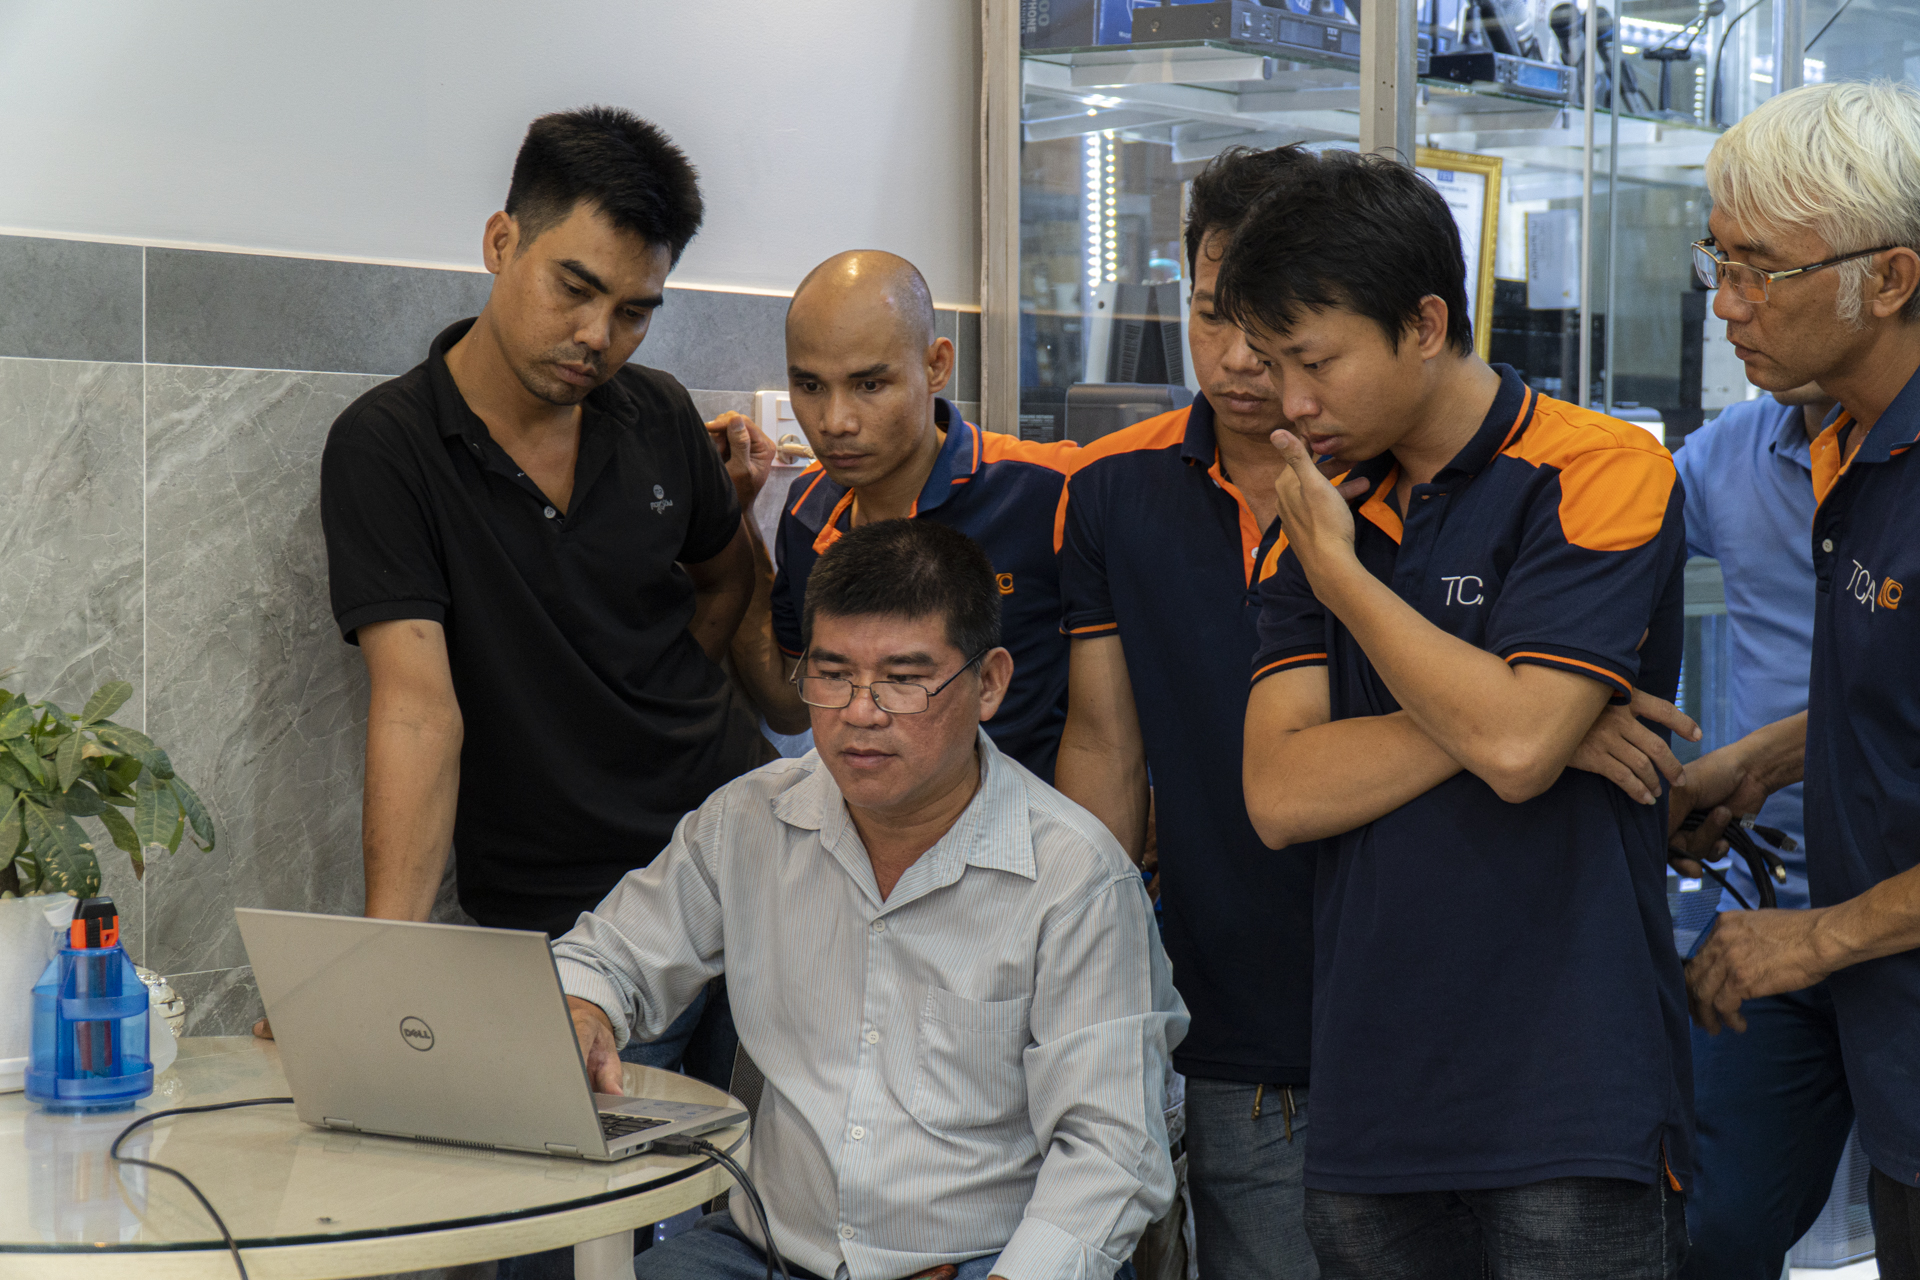 P.Audio giới thiệu sản phẩm thiết bị âm thanh tại TCA Hồ Chí Minh